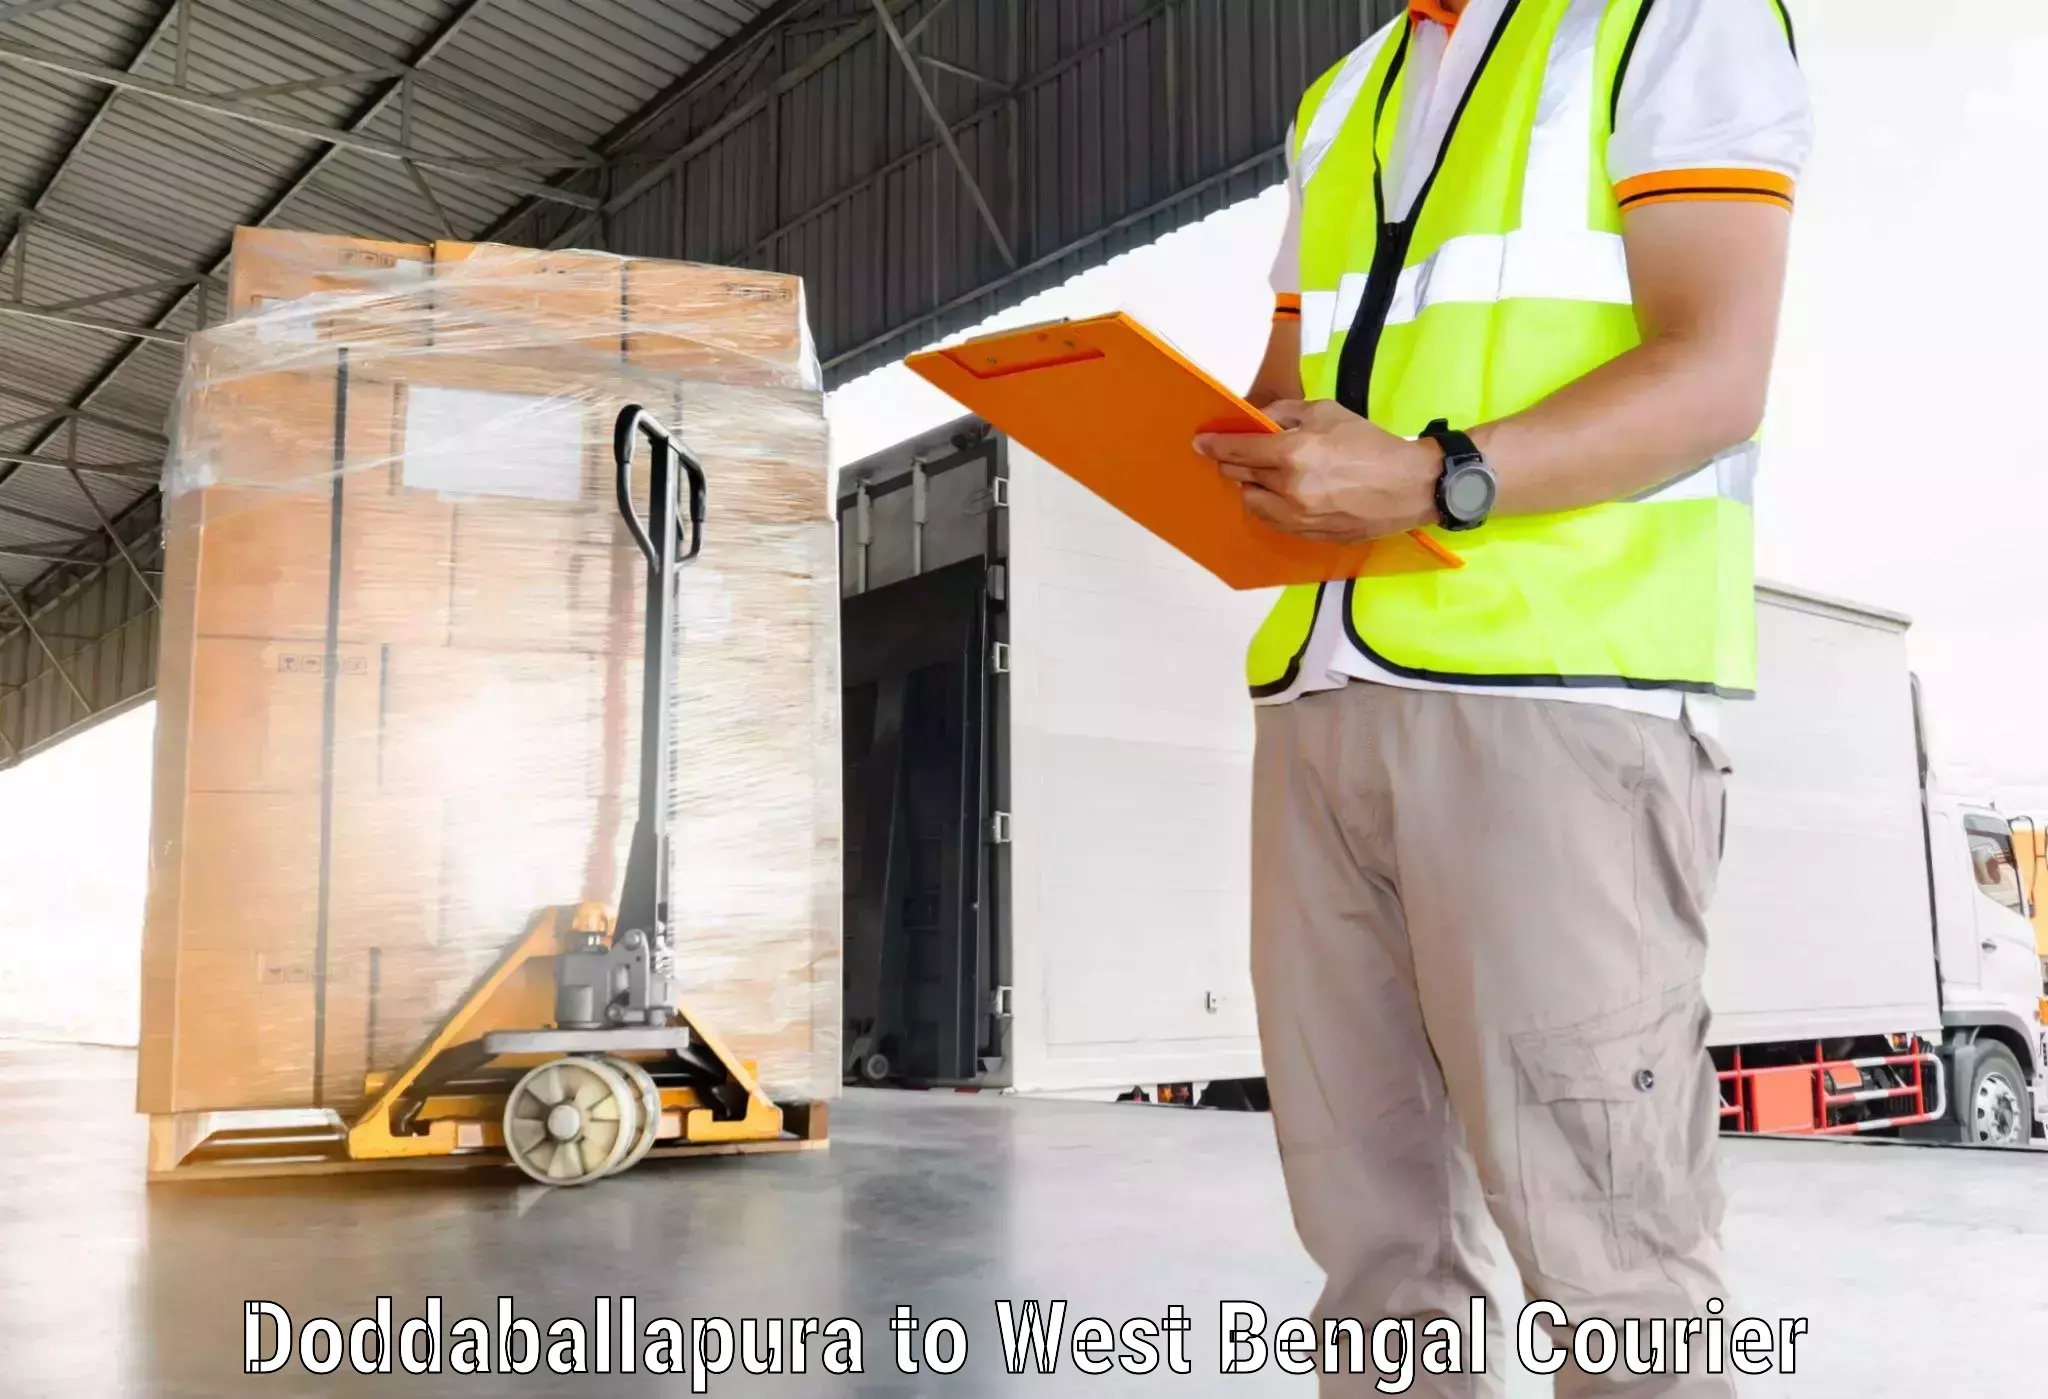 Nationwide courier service Doddaballapura to Swarupnagar